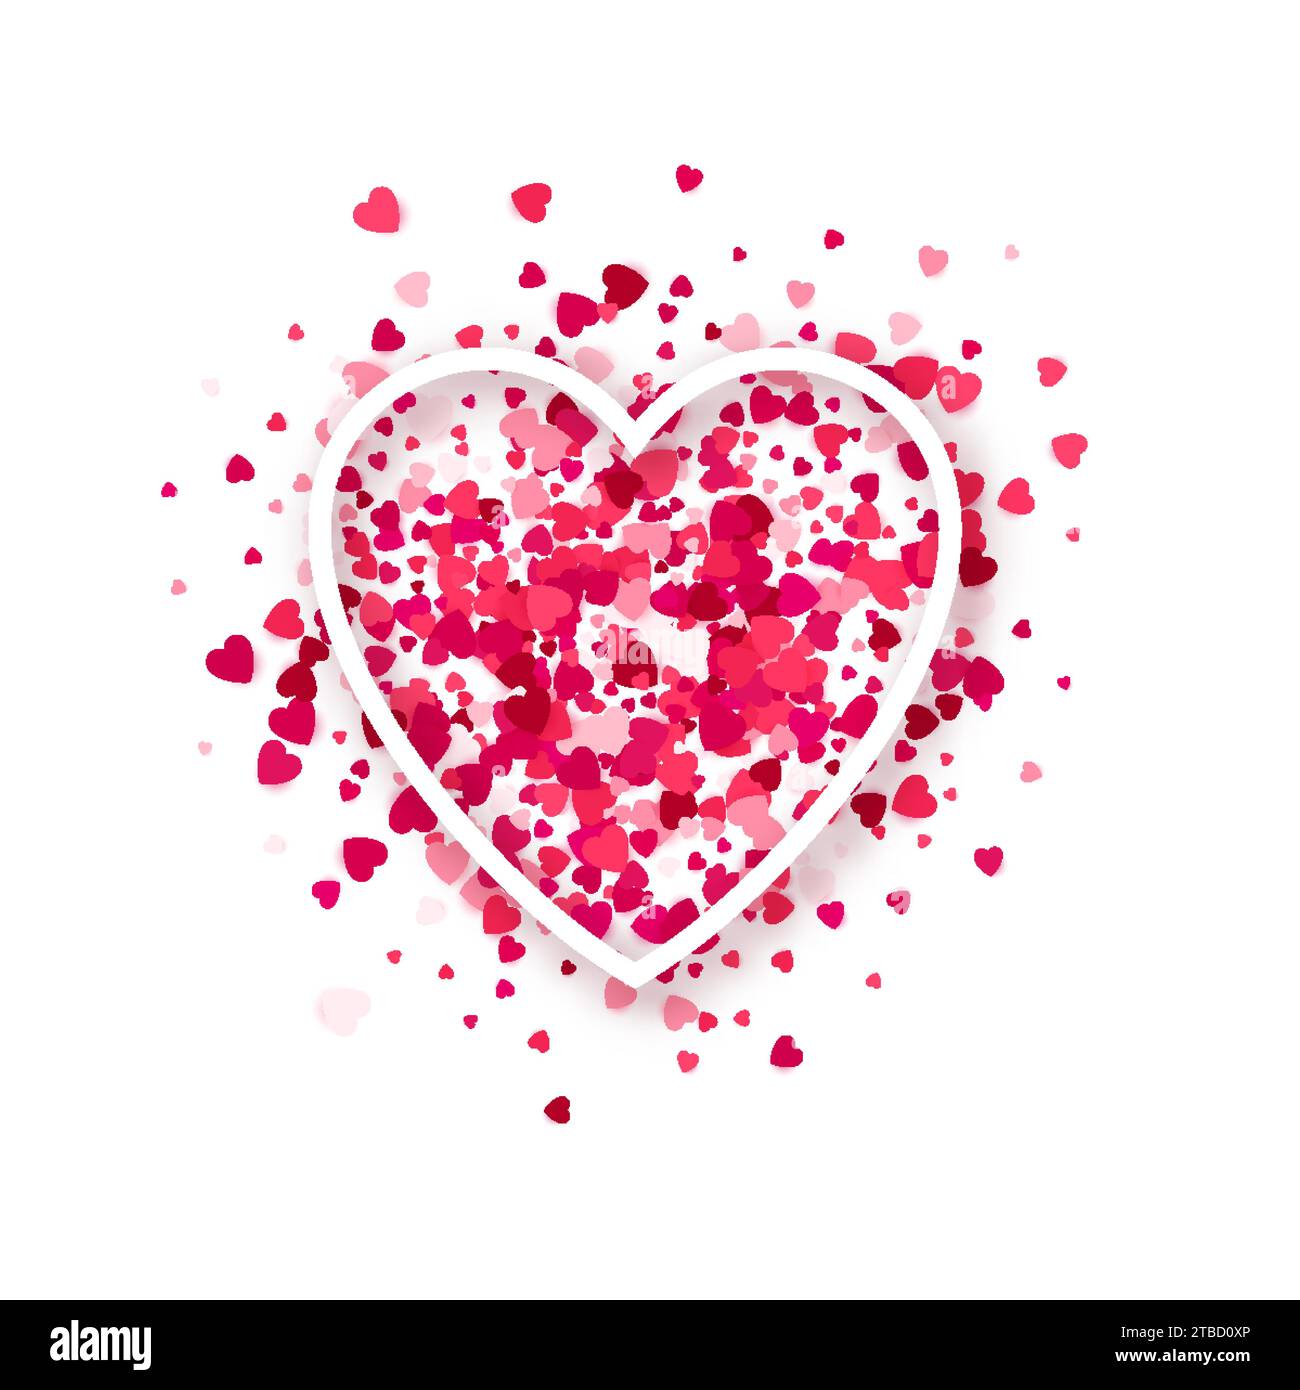 Linienrahmen 3D-Herzform mit Glitzerrosa und roten Herzblütenpartikeln auf Hintergrund. Romantisches Liebessymbol. Valentinskarte. Hochzeitseinladung. Website-Banner, Designelement mit Konfetti Stock Vektor